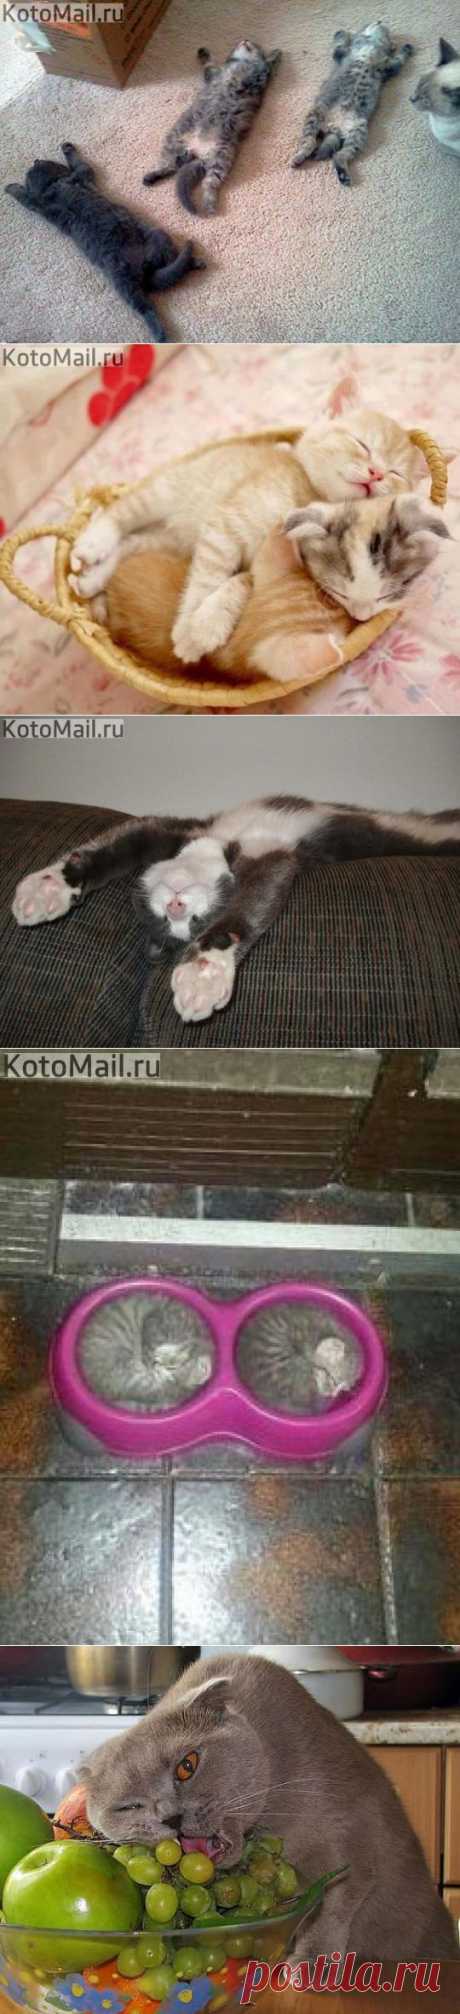 Спящие котятки! | KotoMail.ru